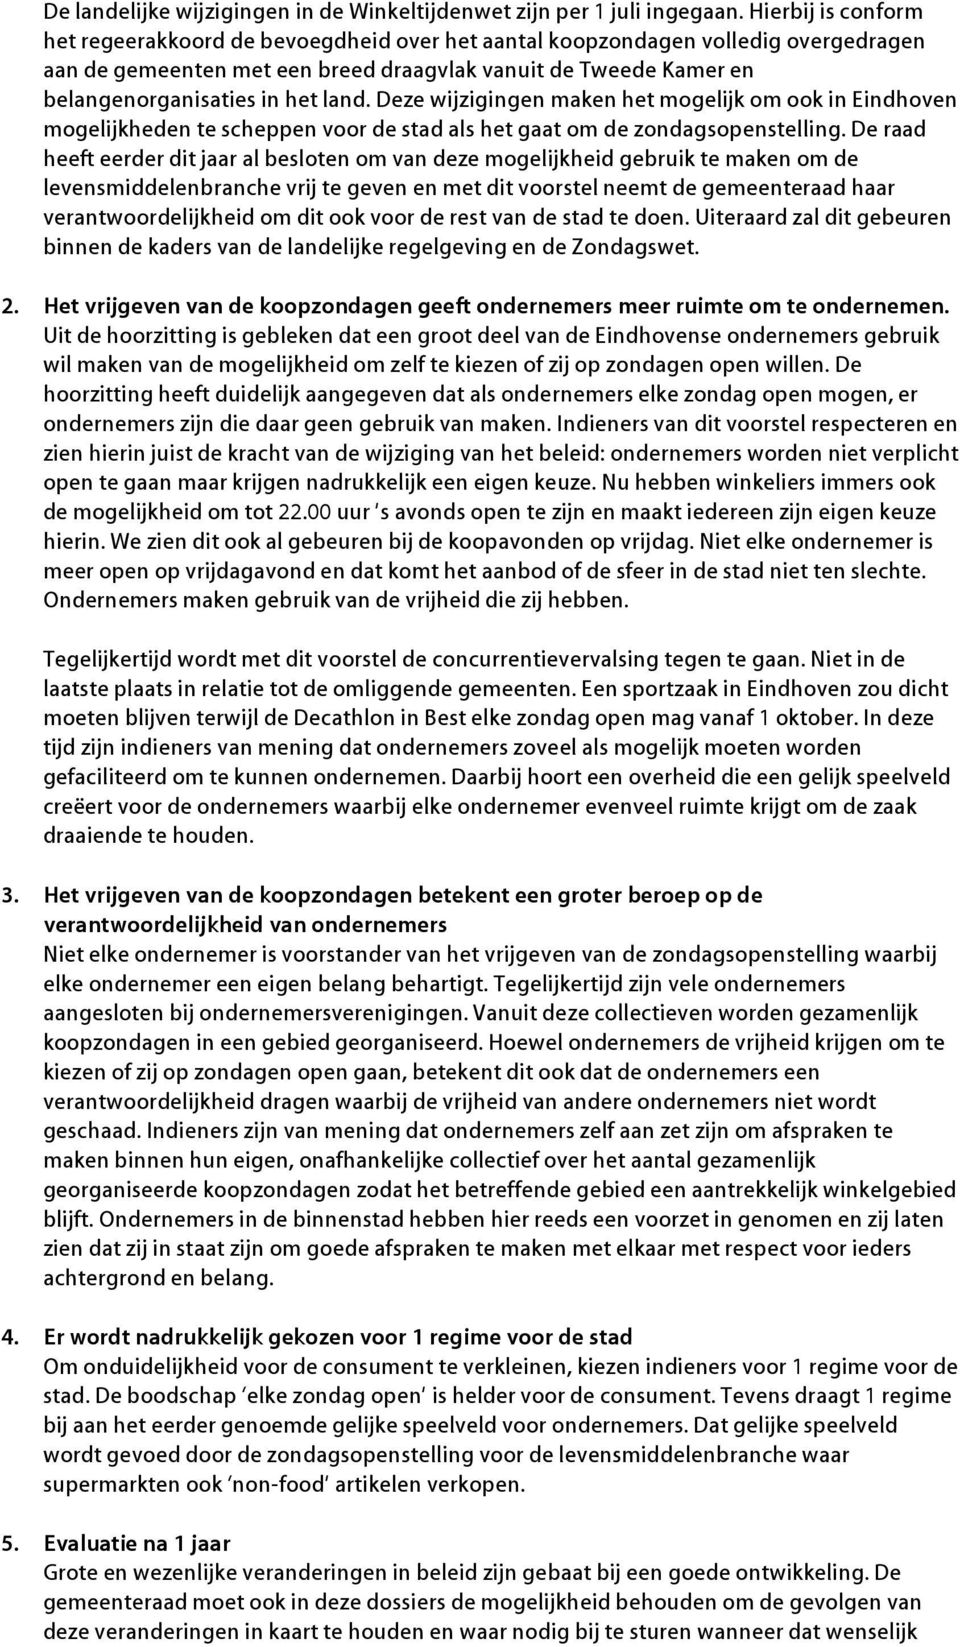 land. Deze wijzigingen maken het mogelijk om ook in Eindhoven mogelijkheden te scheppen voor de stad als het gaat om de zondagsopenstelling.